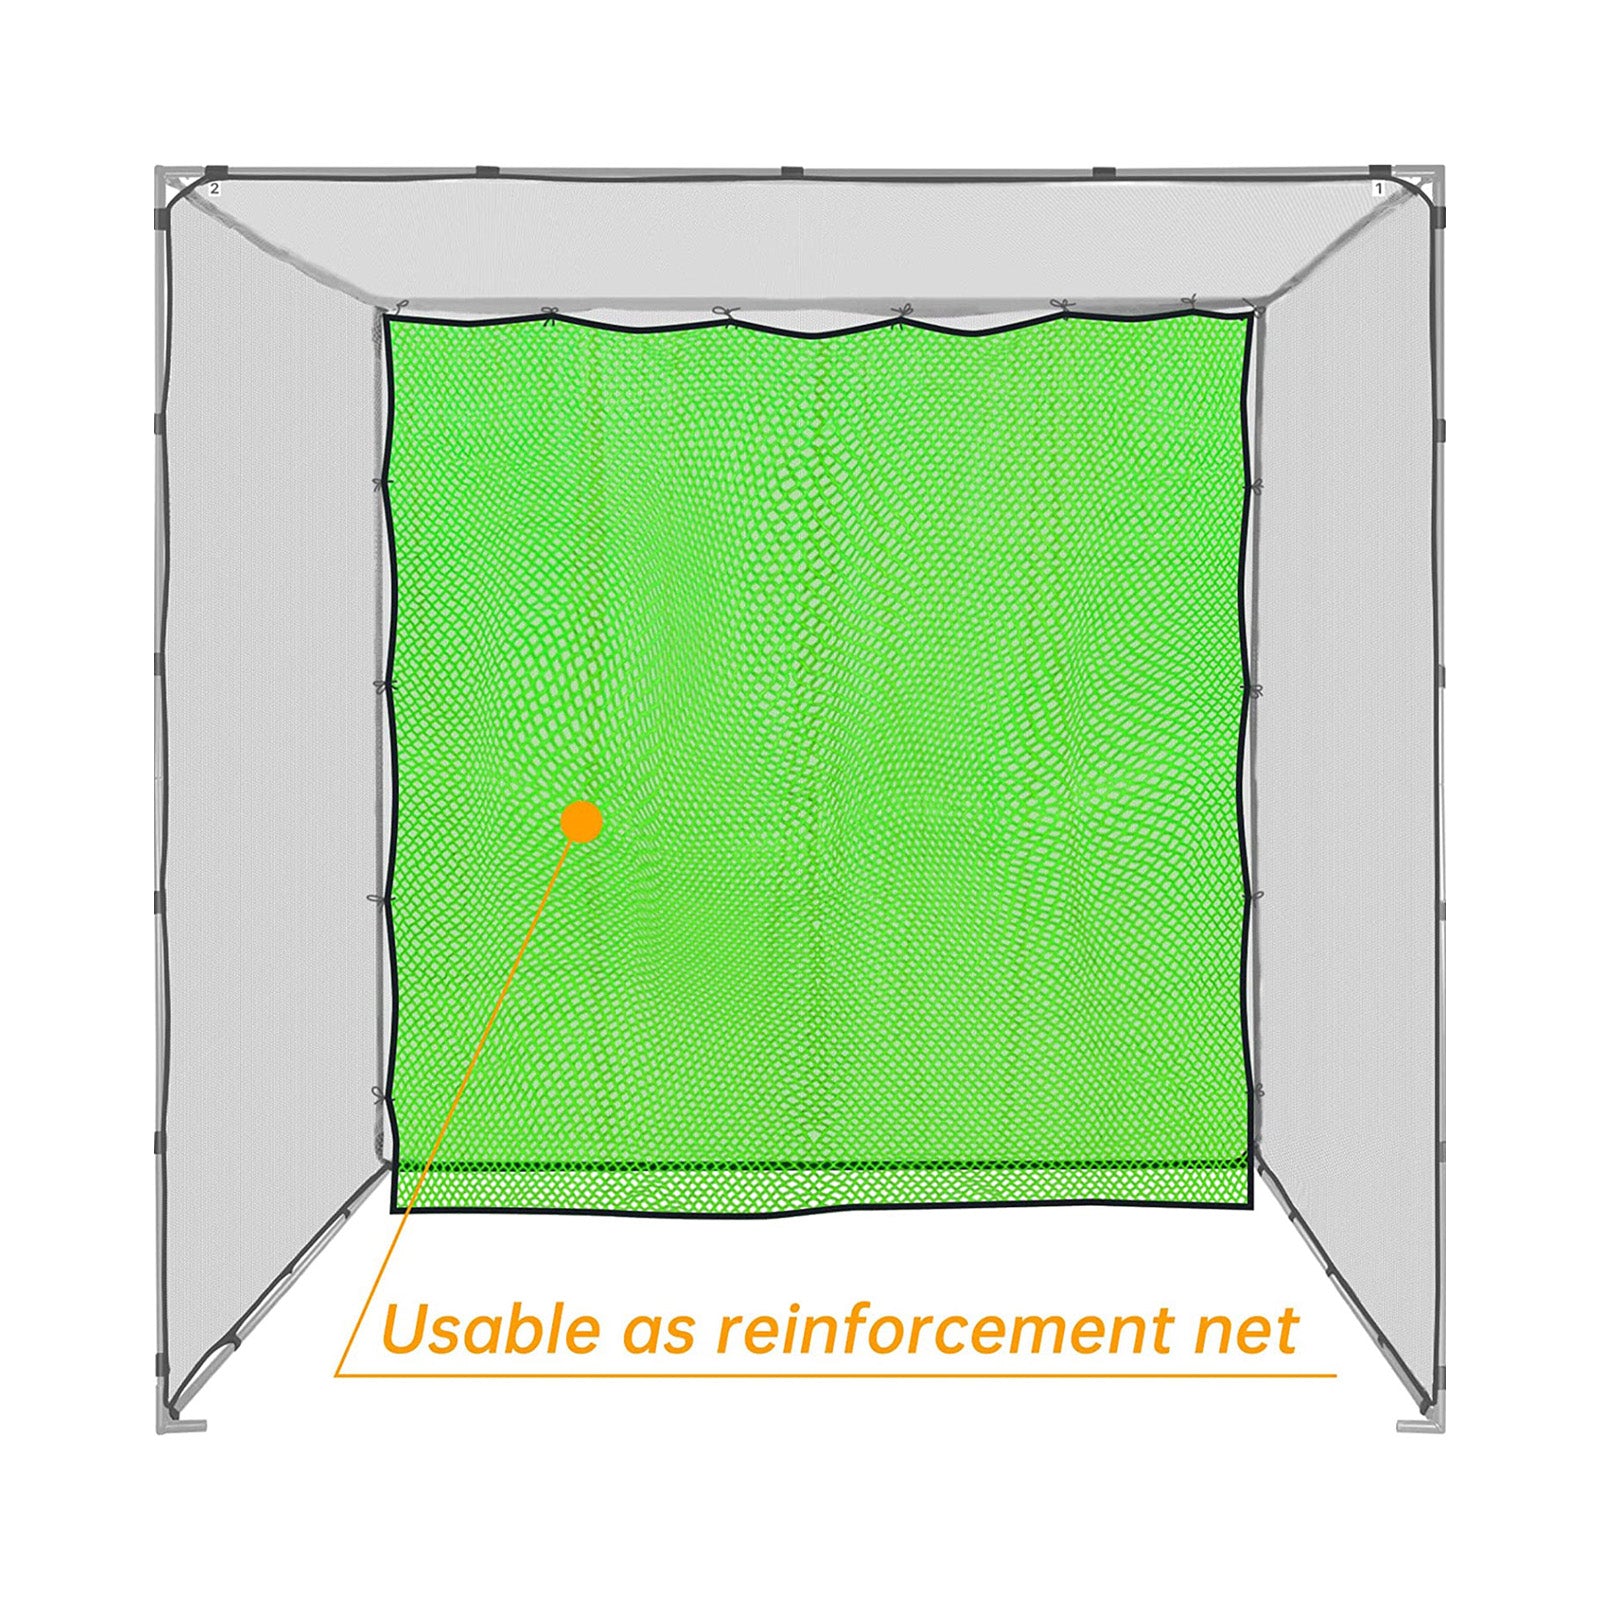 Pièce nette de remplacement de cage de golf Galileo 10x40/bonne résilience